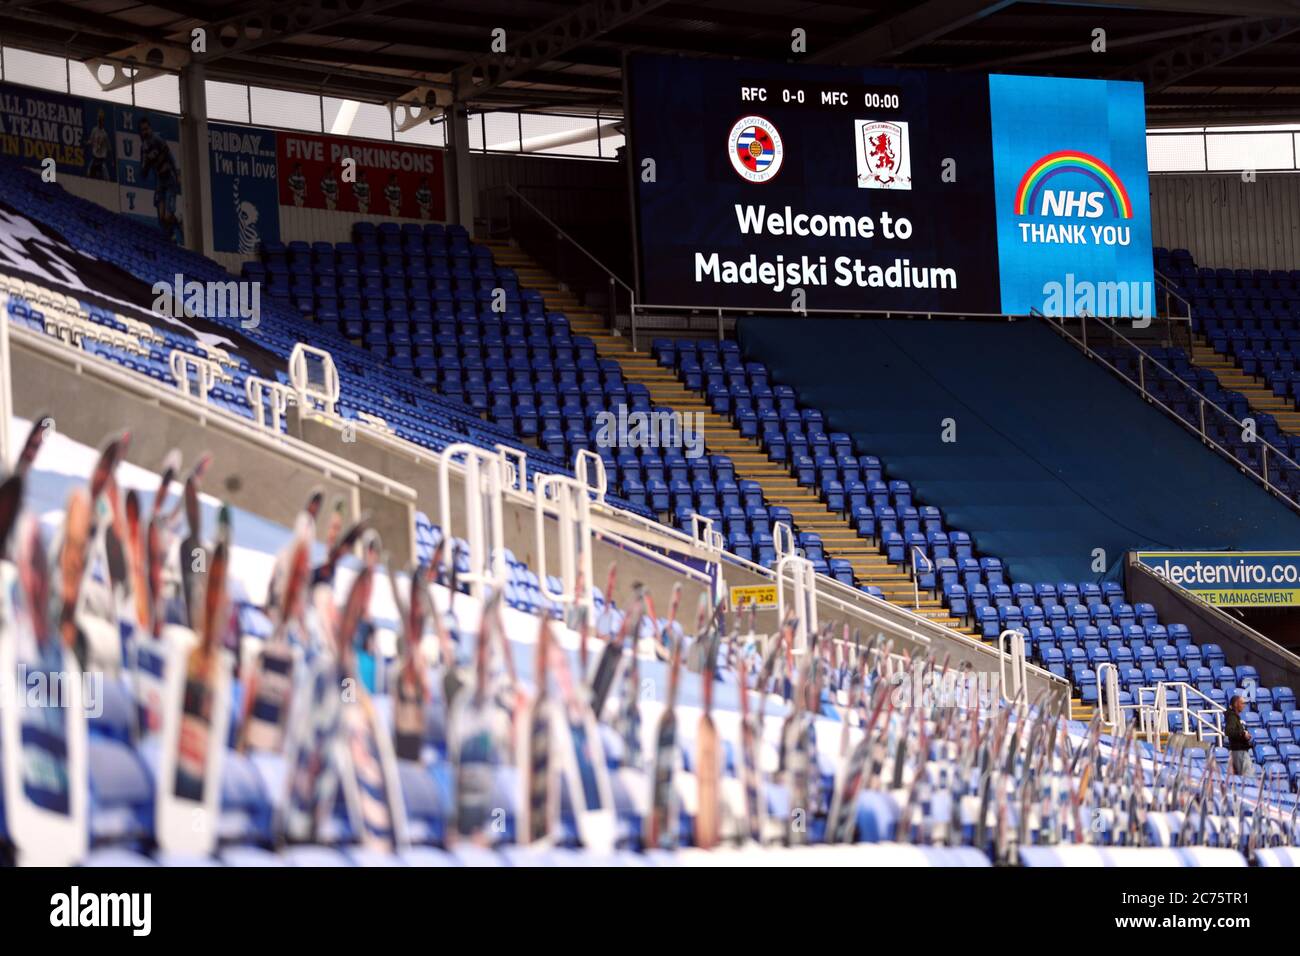 NHS Merci d'afficher sur le grand écran et des découpes de carton de fans dans les stands avant le match de championnat de Sky Bet au stade Madejski, Reading. Banque D'Images